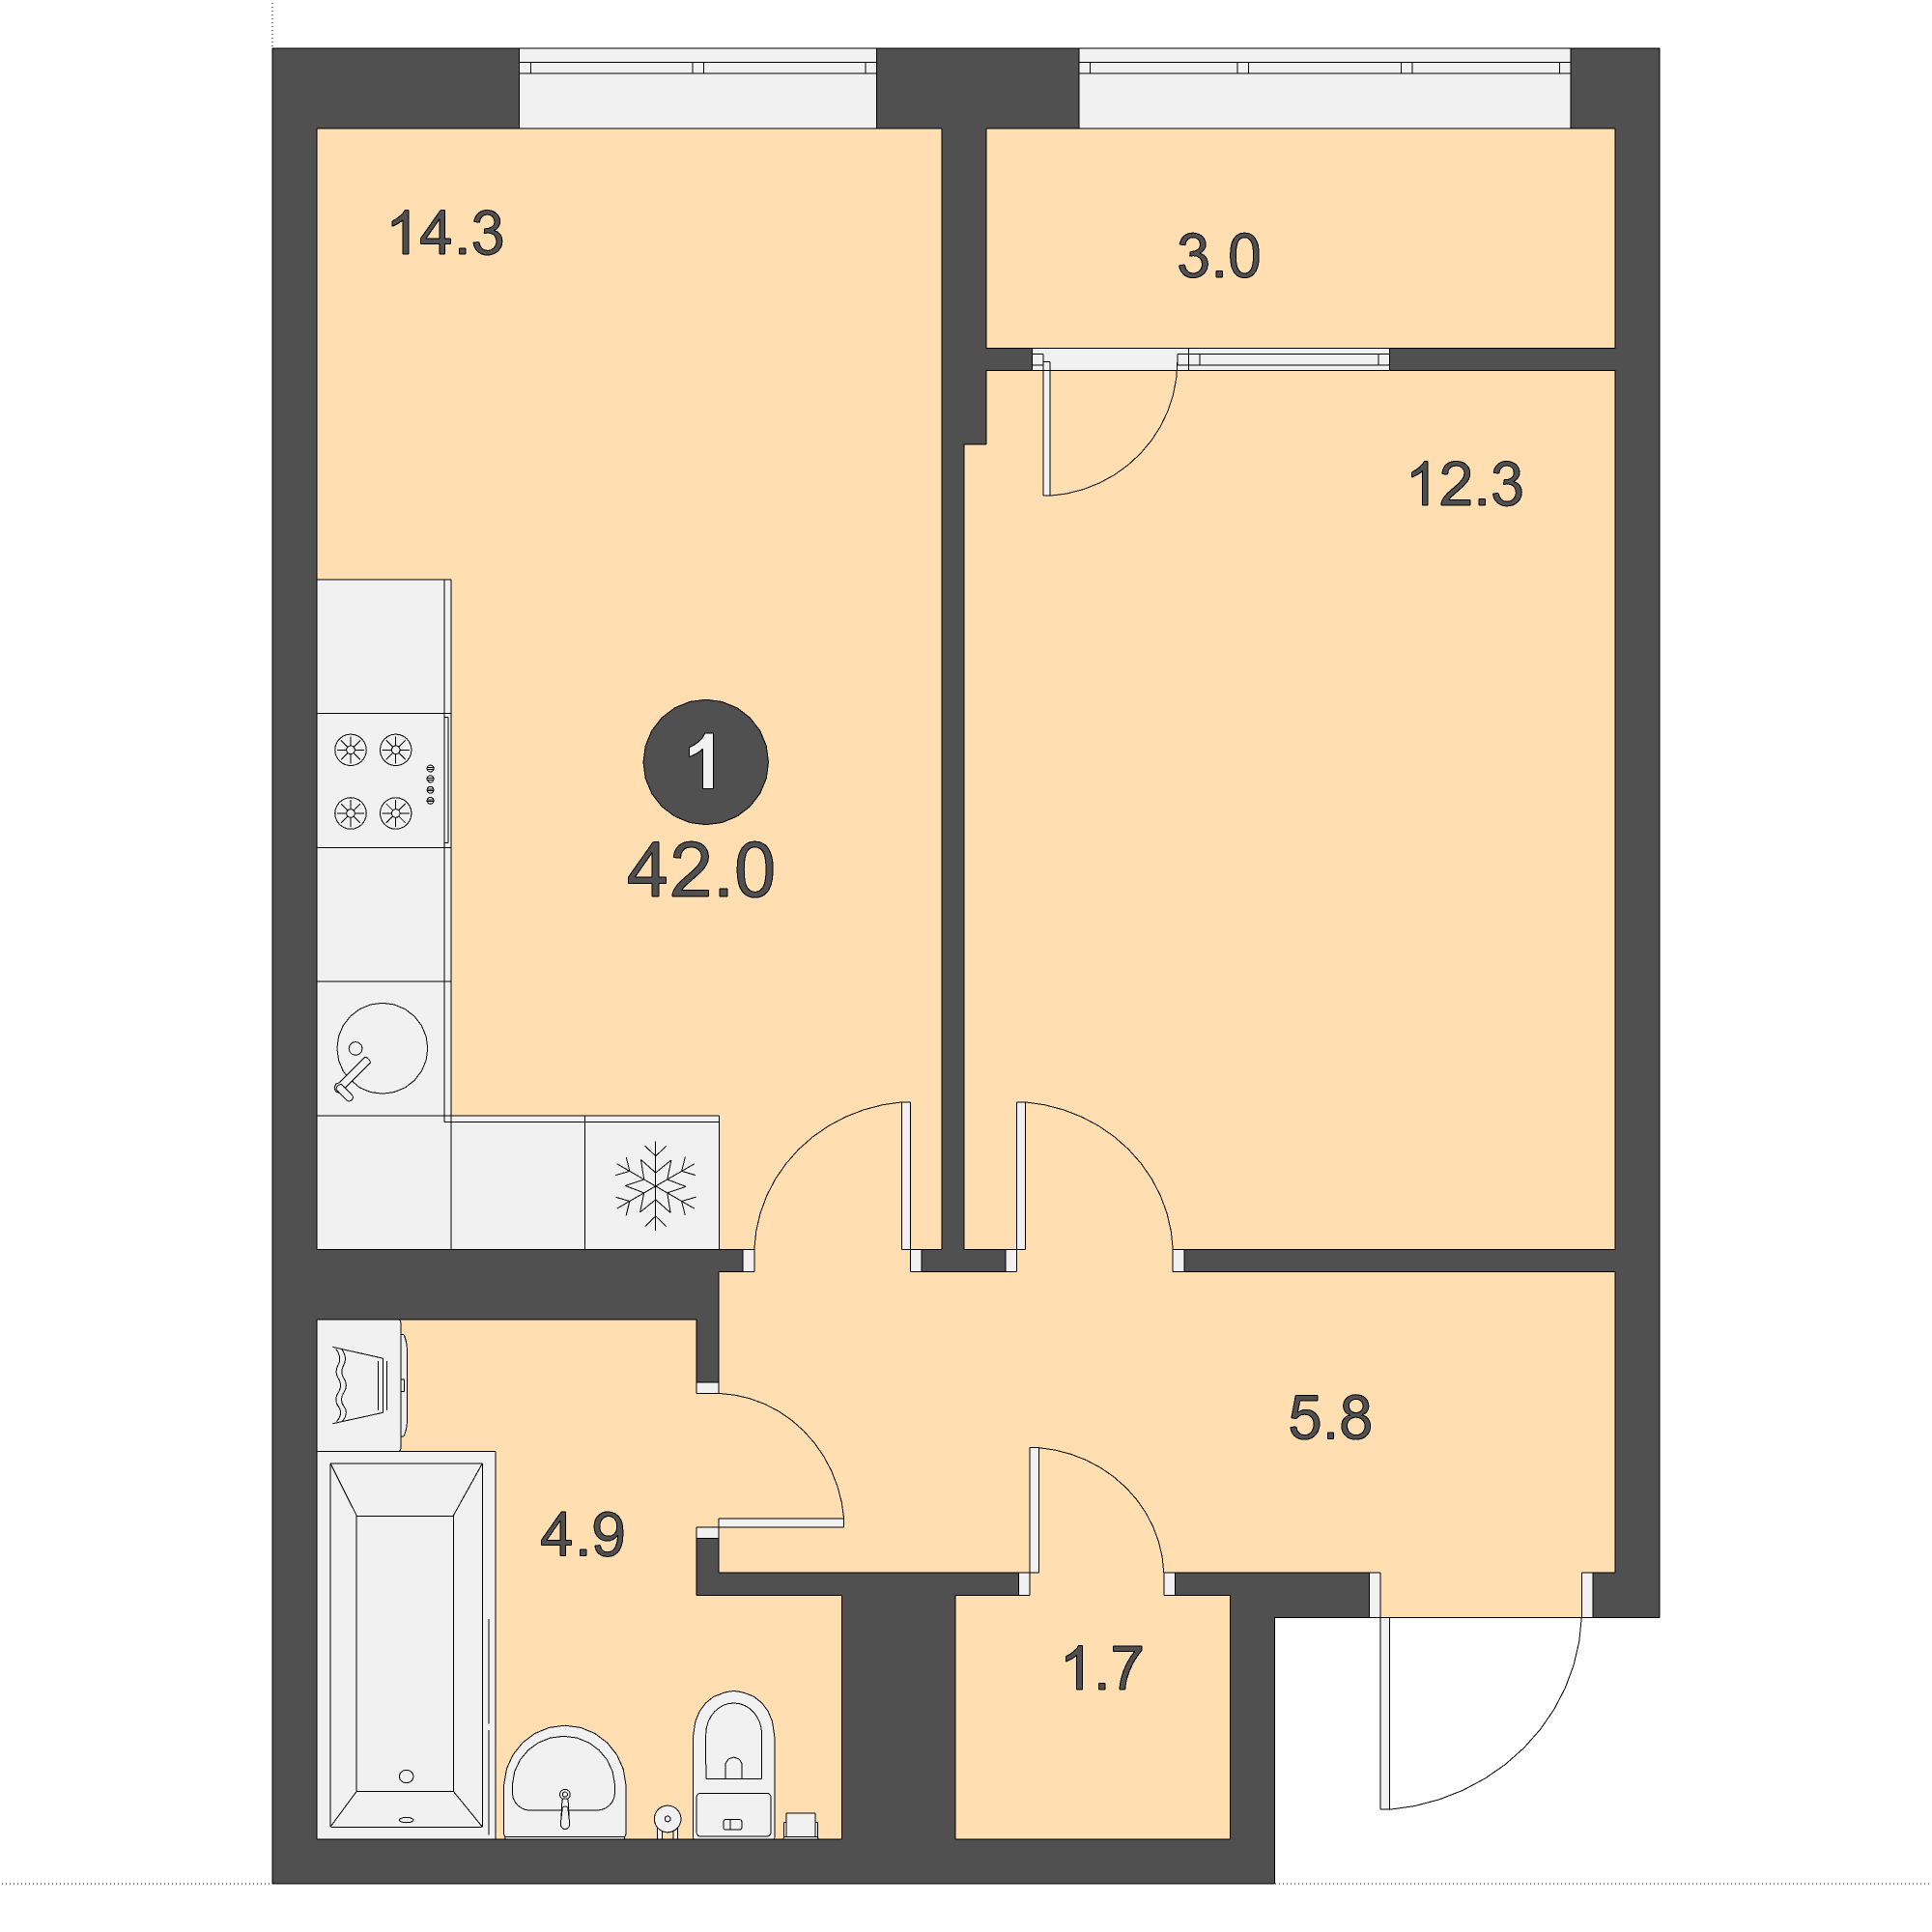 ЖК Дом на Бульваре, 1-комн кв 42,0 м2, за 5 586 000 ₽, 17 этаж